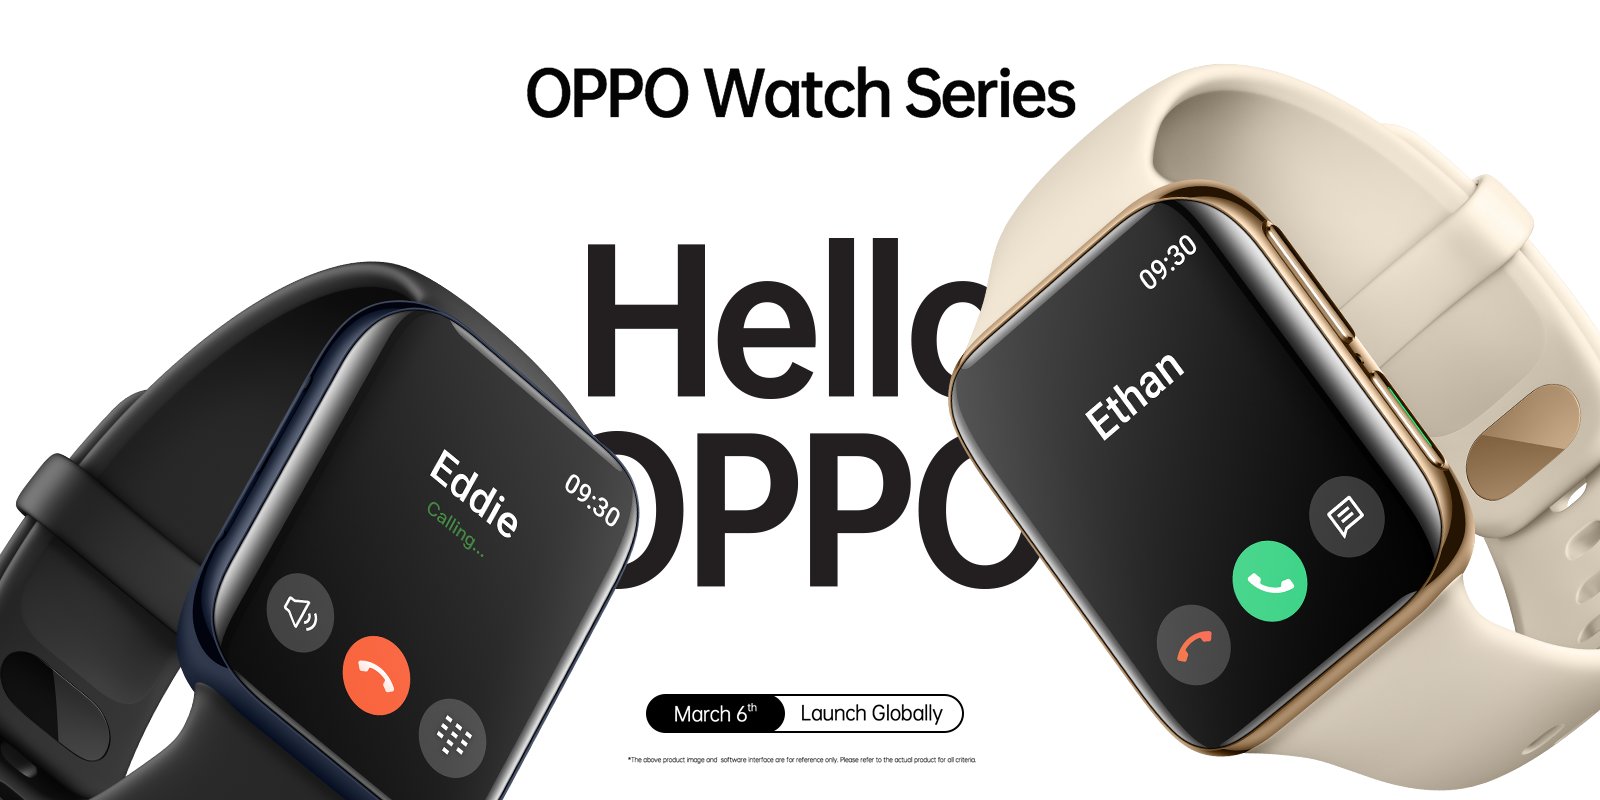 alt="Oppo Watch"